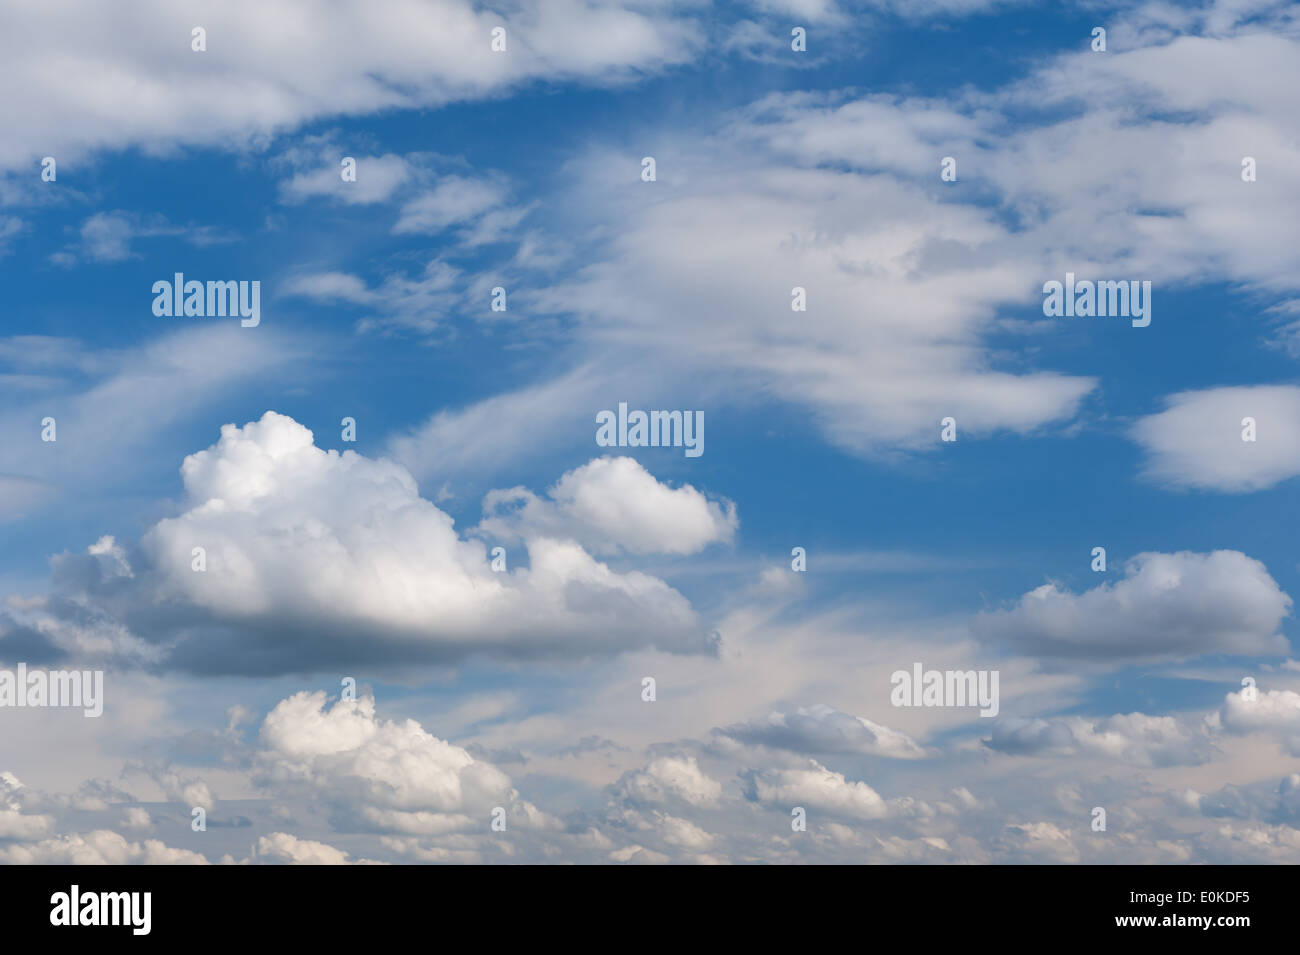 Sonnigen Cirrus und Cumulus Wolkengebilde Mix auf blauer Himmel, Wolken bei gutem Wetter in horizontaler Ausrichtung, niemand. Stockfoto